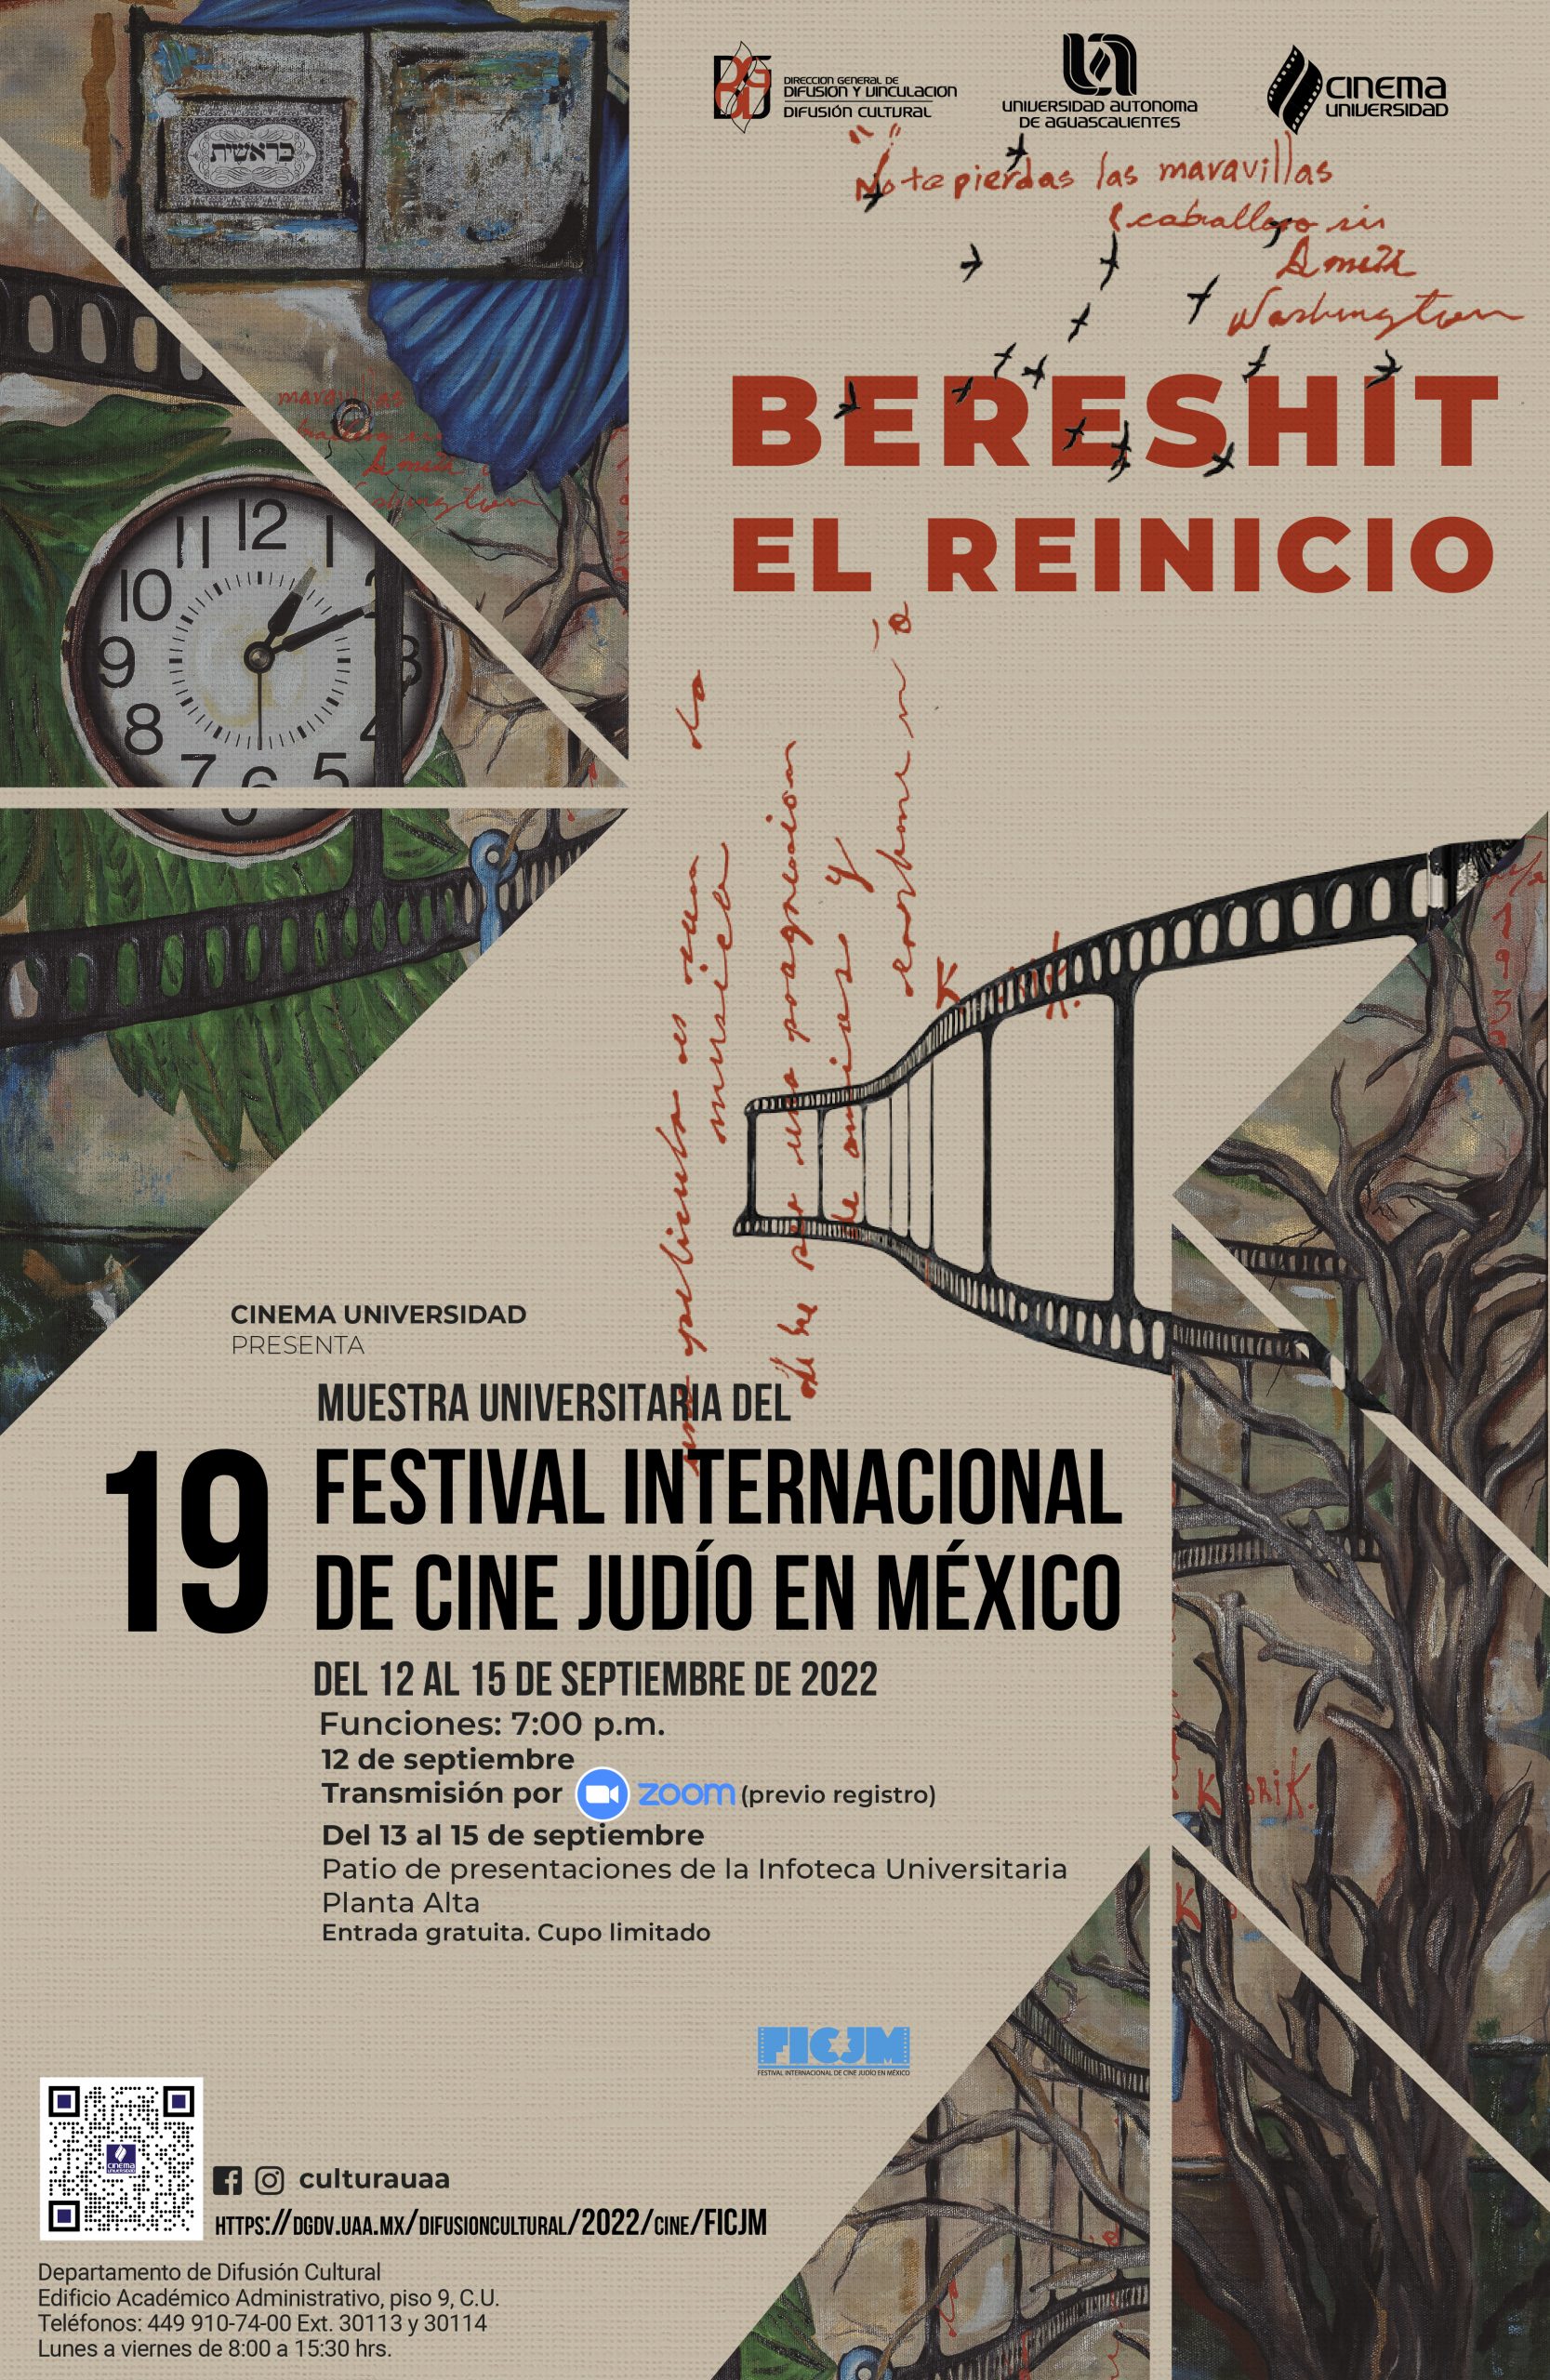 Muestra Universitaria del Festival Internacional de Cine Judío en México